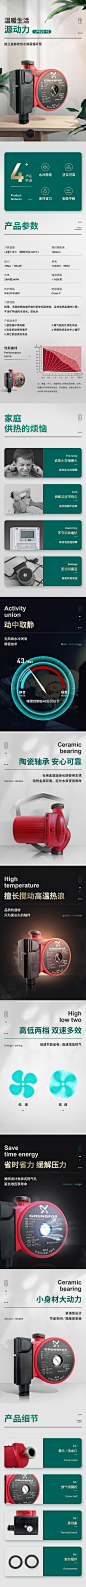 工业品家用水泵热水器循环泵详情页设计